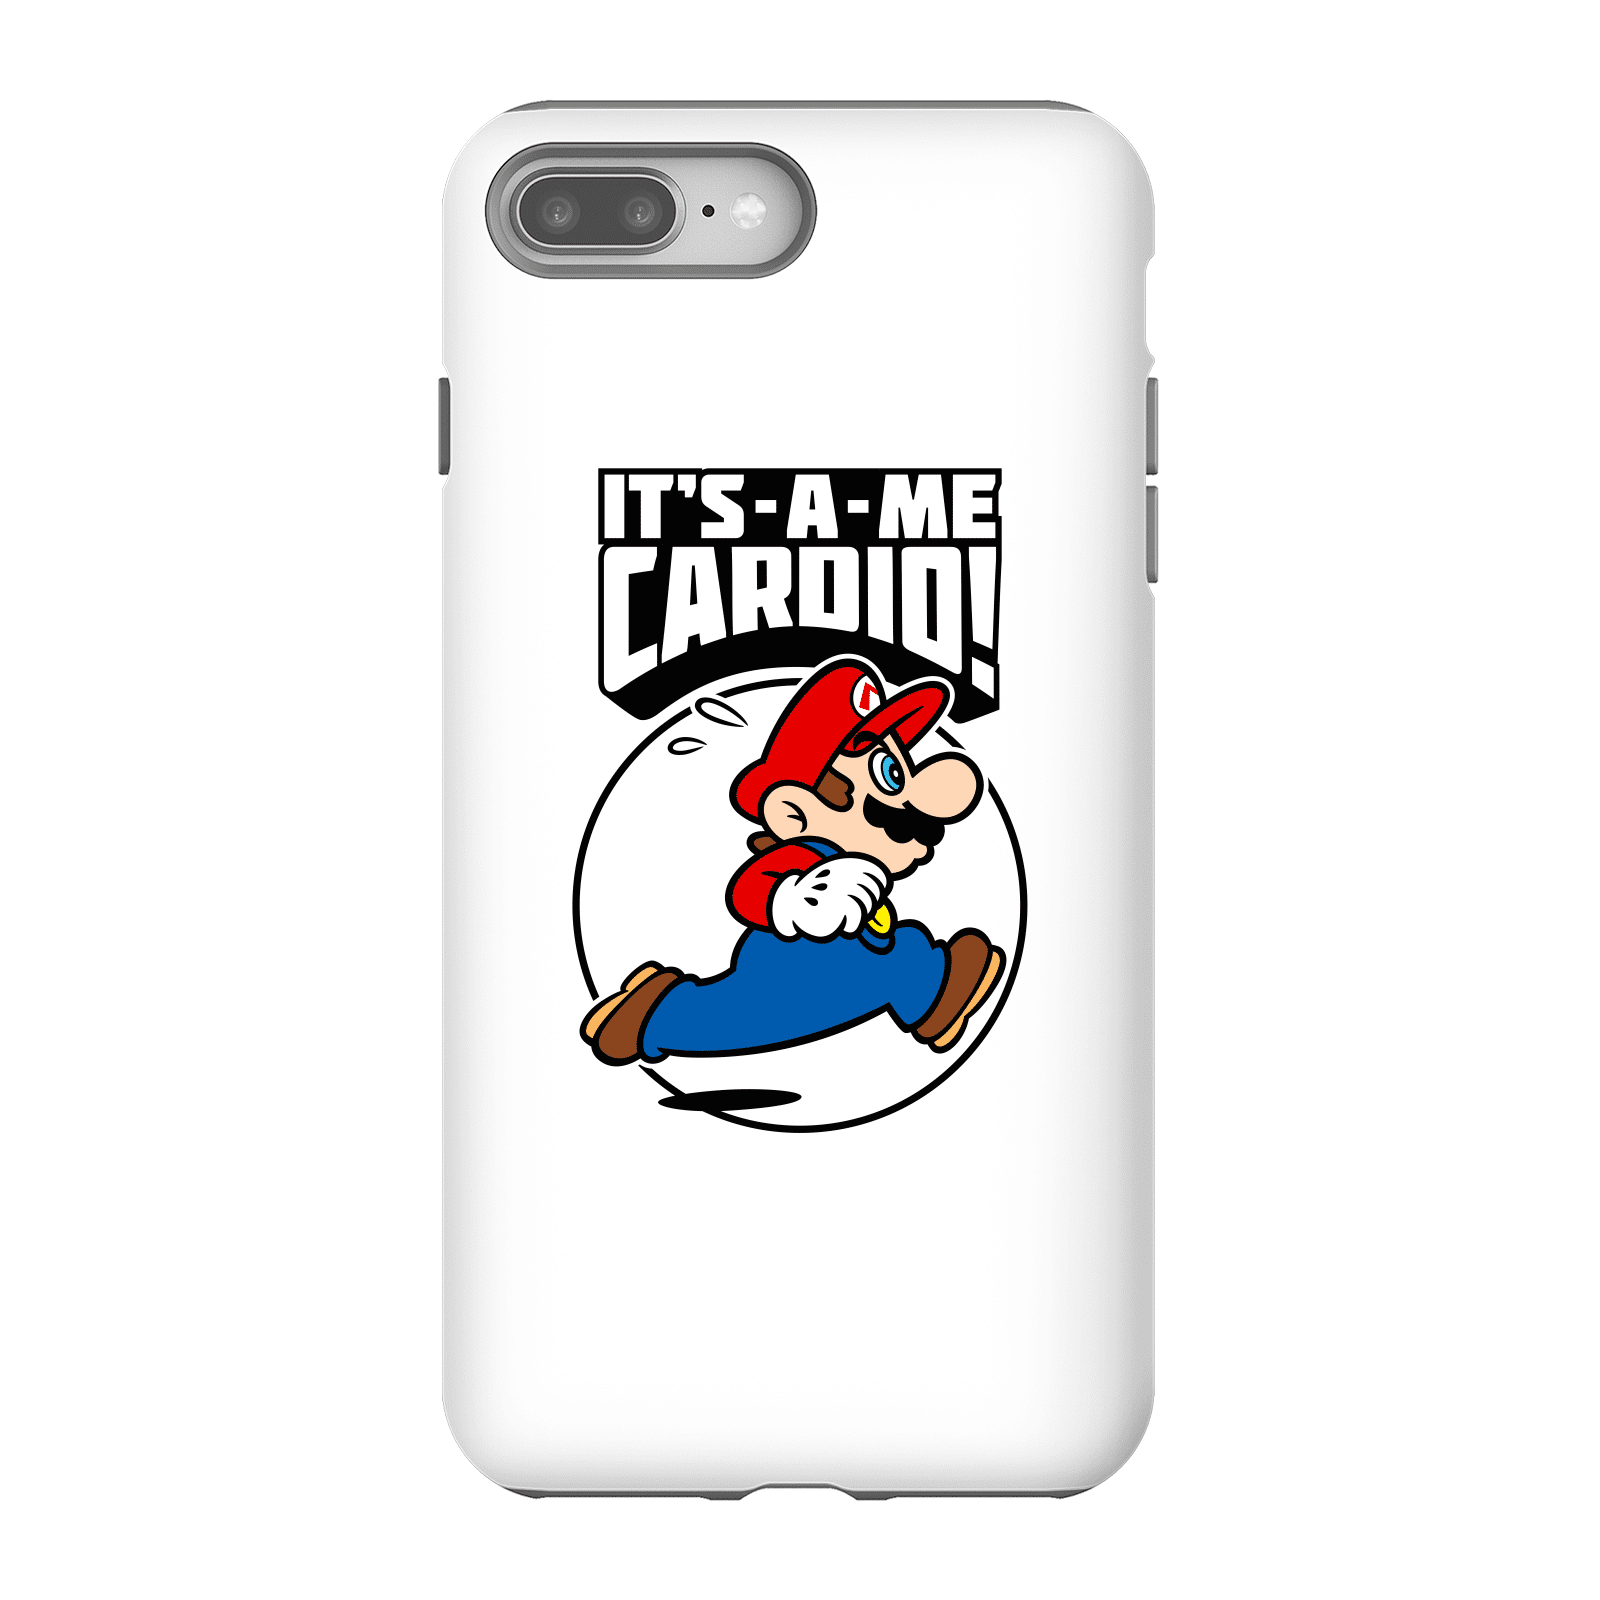 Nintendo Super Mario Cardio Phone Case - iPhone 8 Plus - Tough Case - Matte